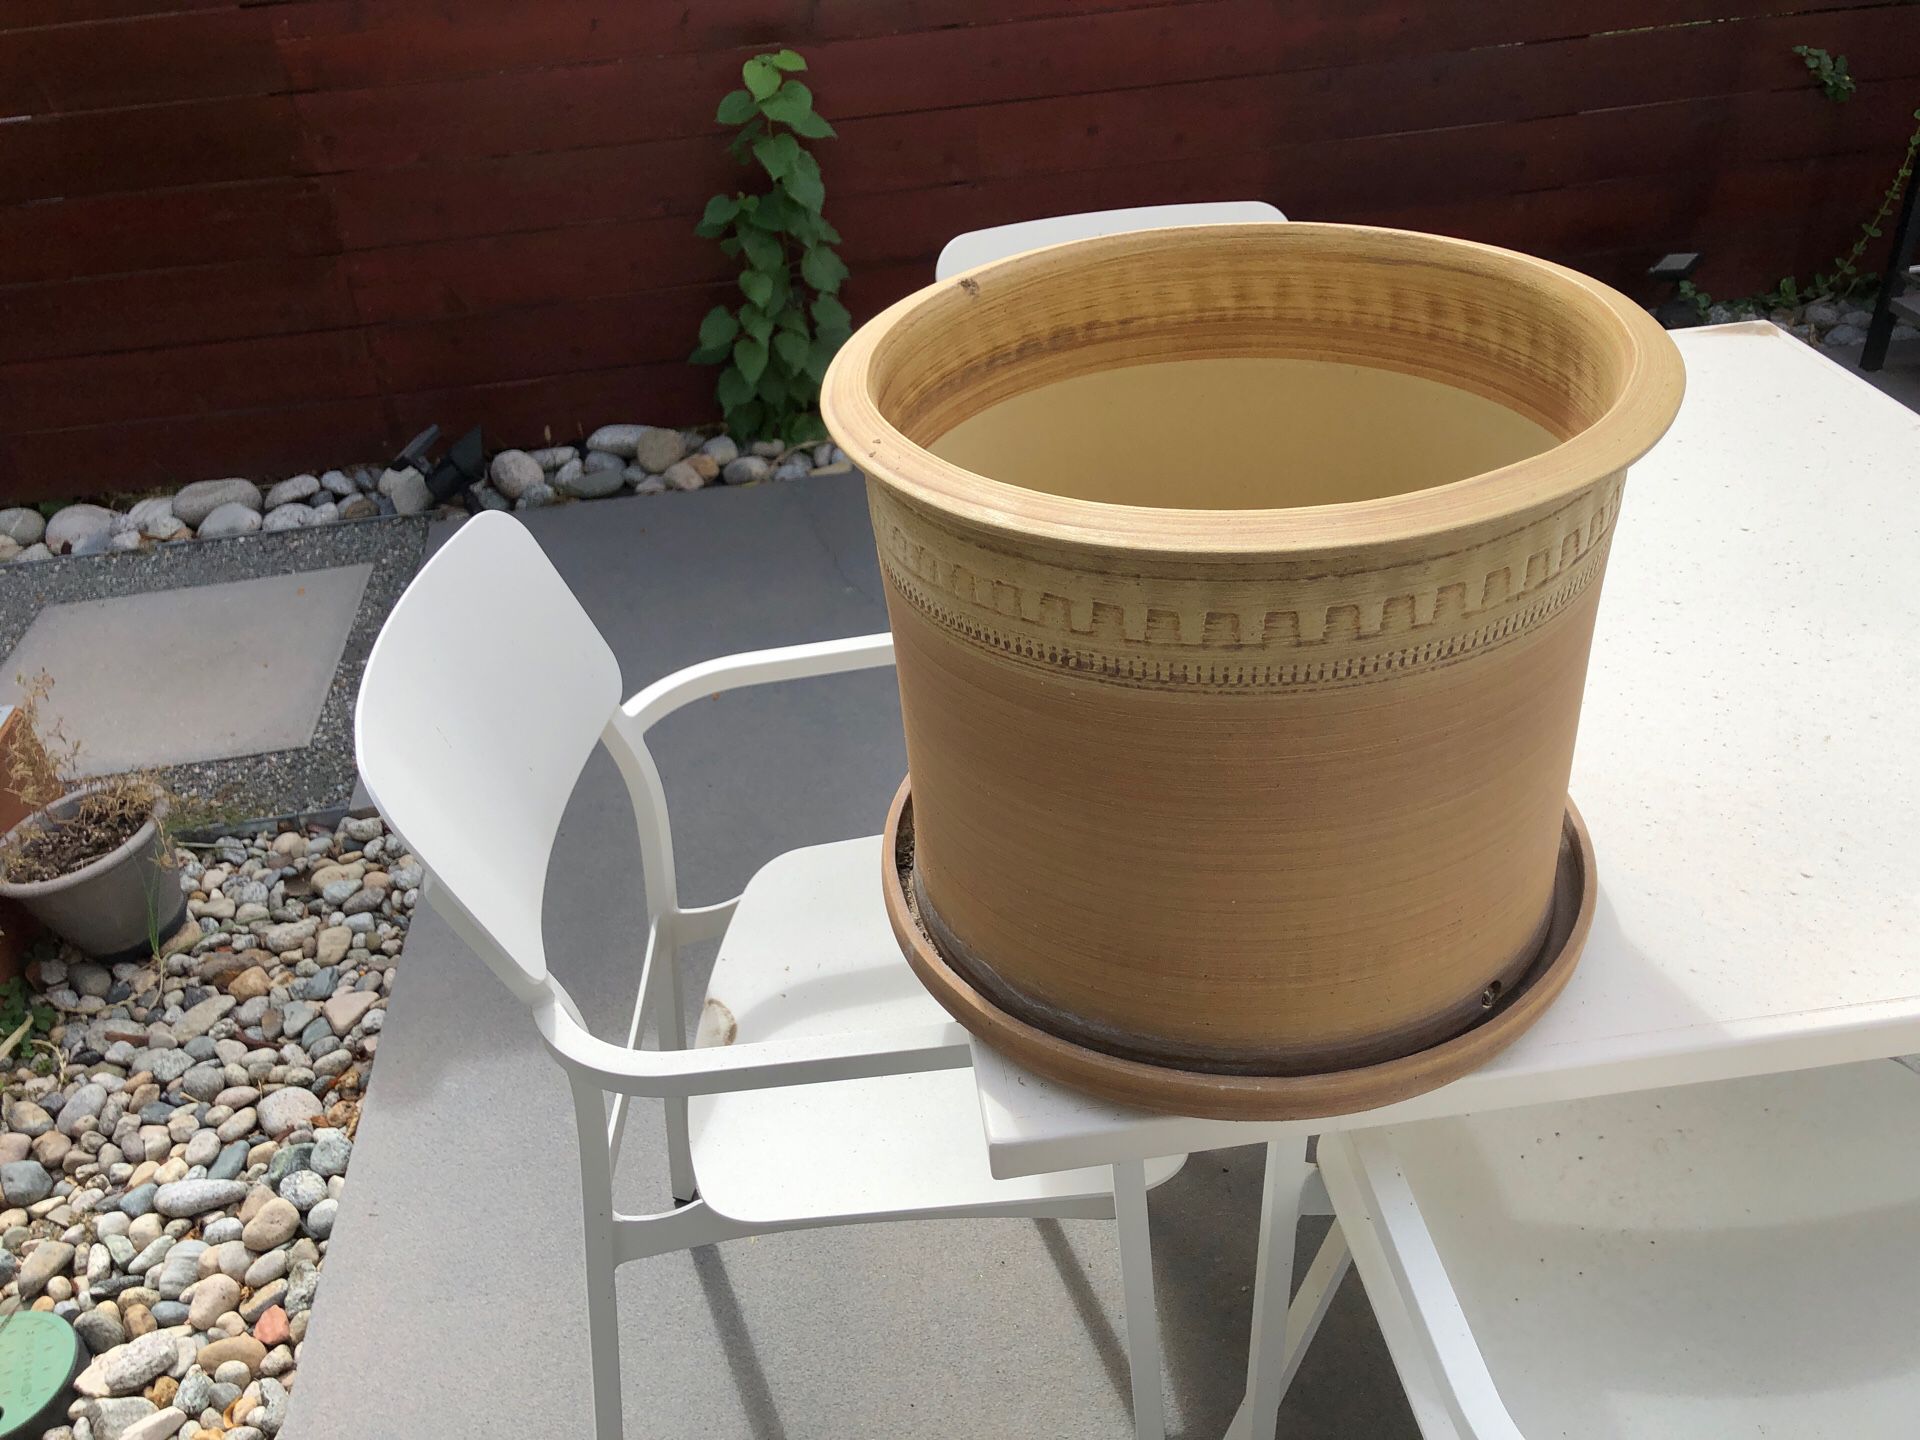 Large plant pot